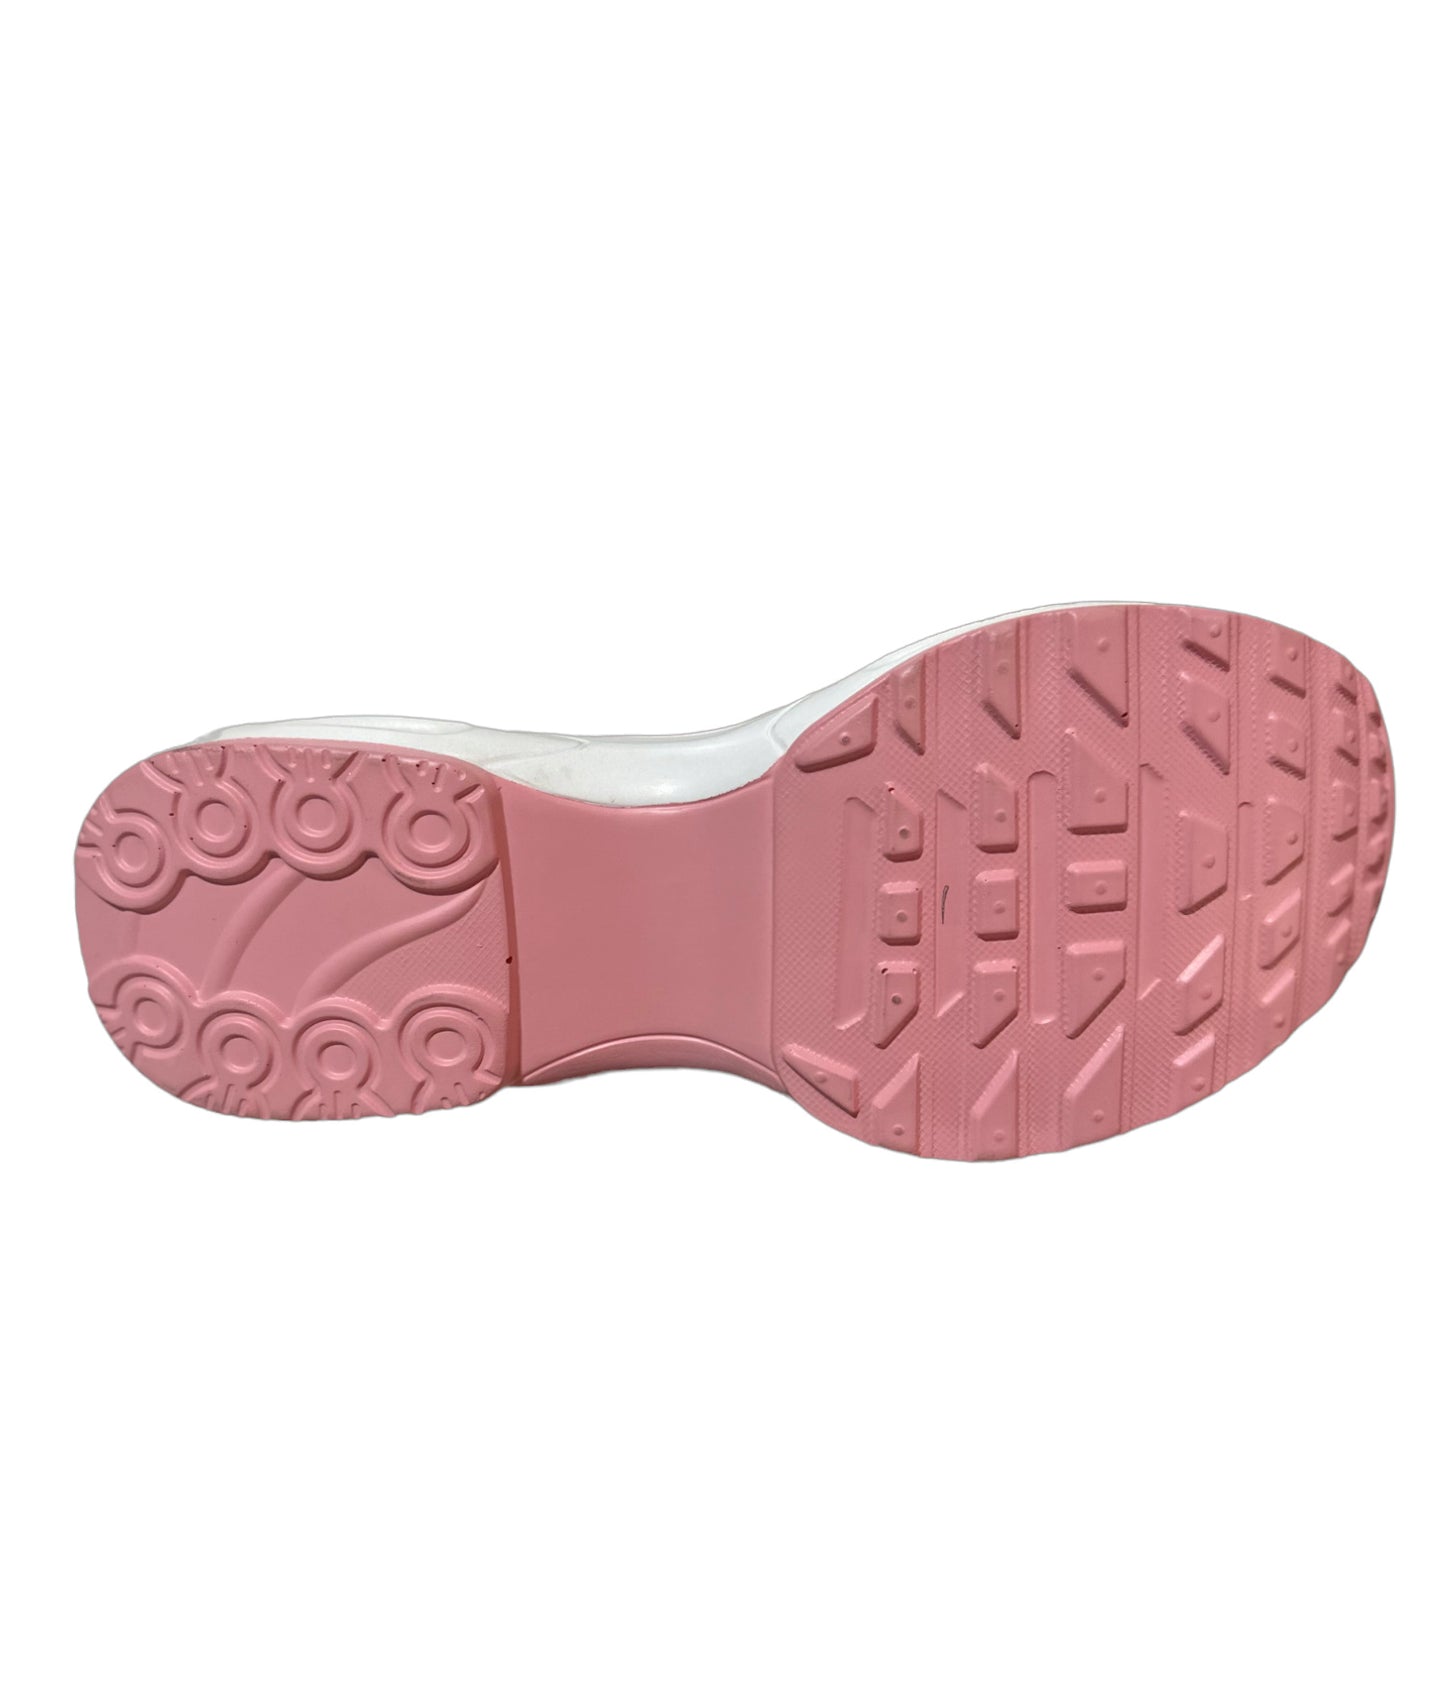 Zapatillas Casuales con Capsula Mujer Aquamoda Z2R Rosado jaspeado